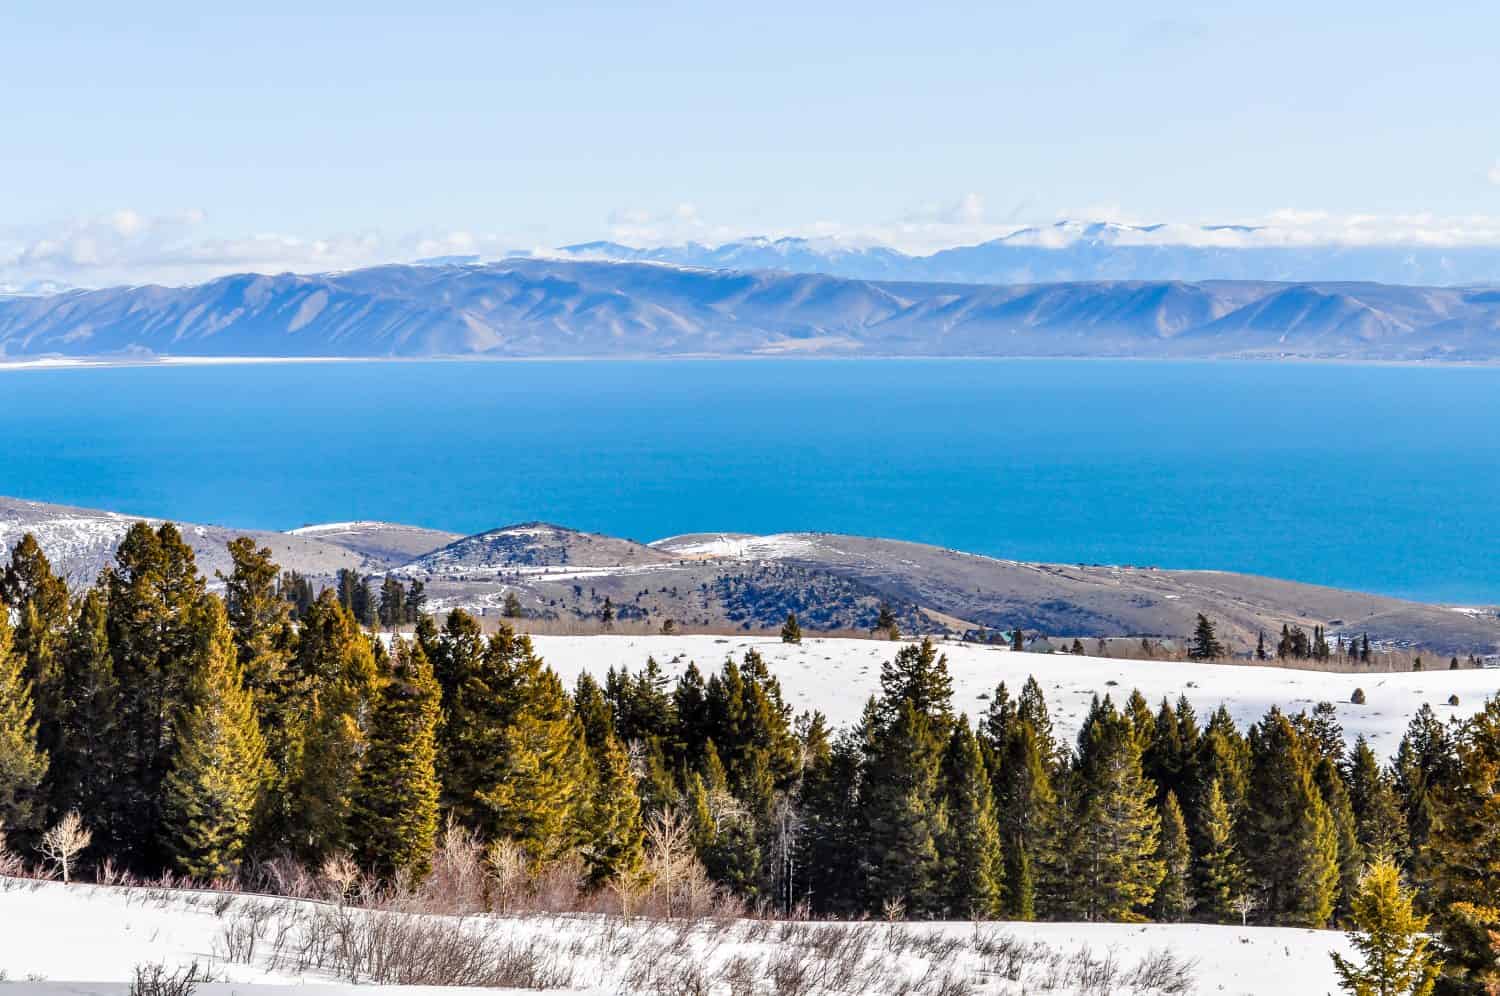 Alberi e neve si stagliano sopra le acque blu del Bear Lake nello Utah.